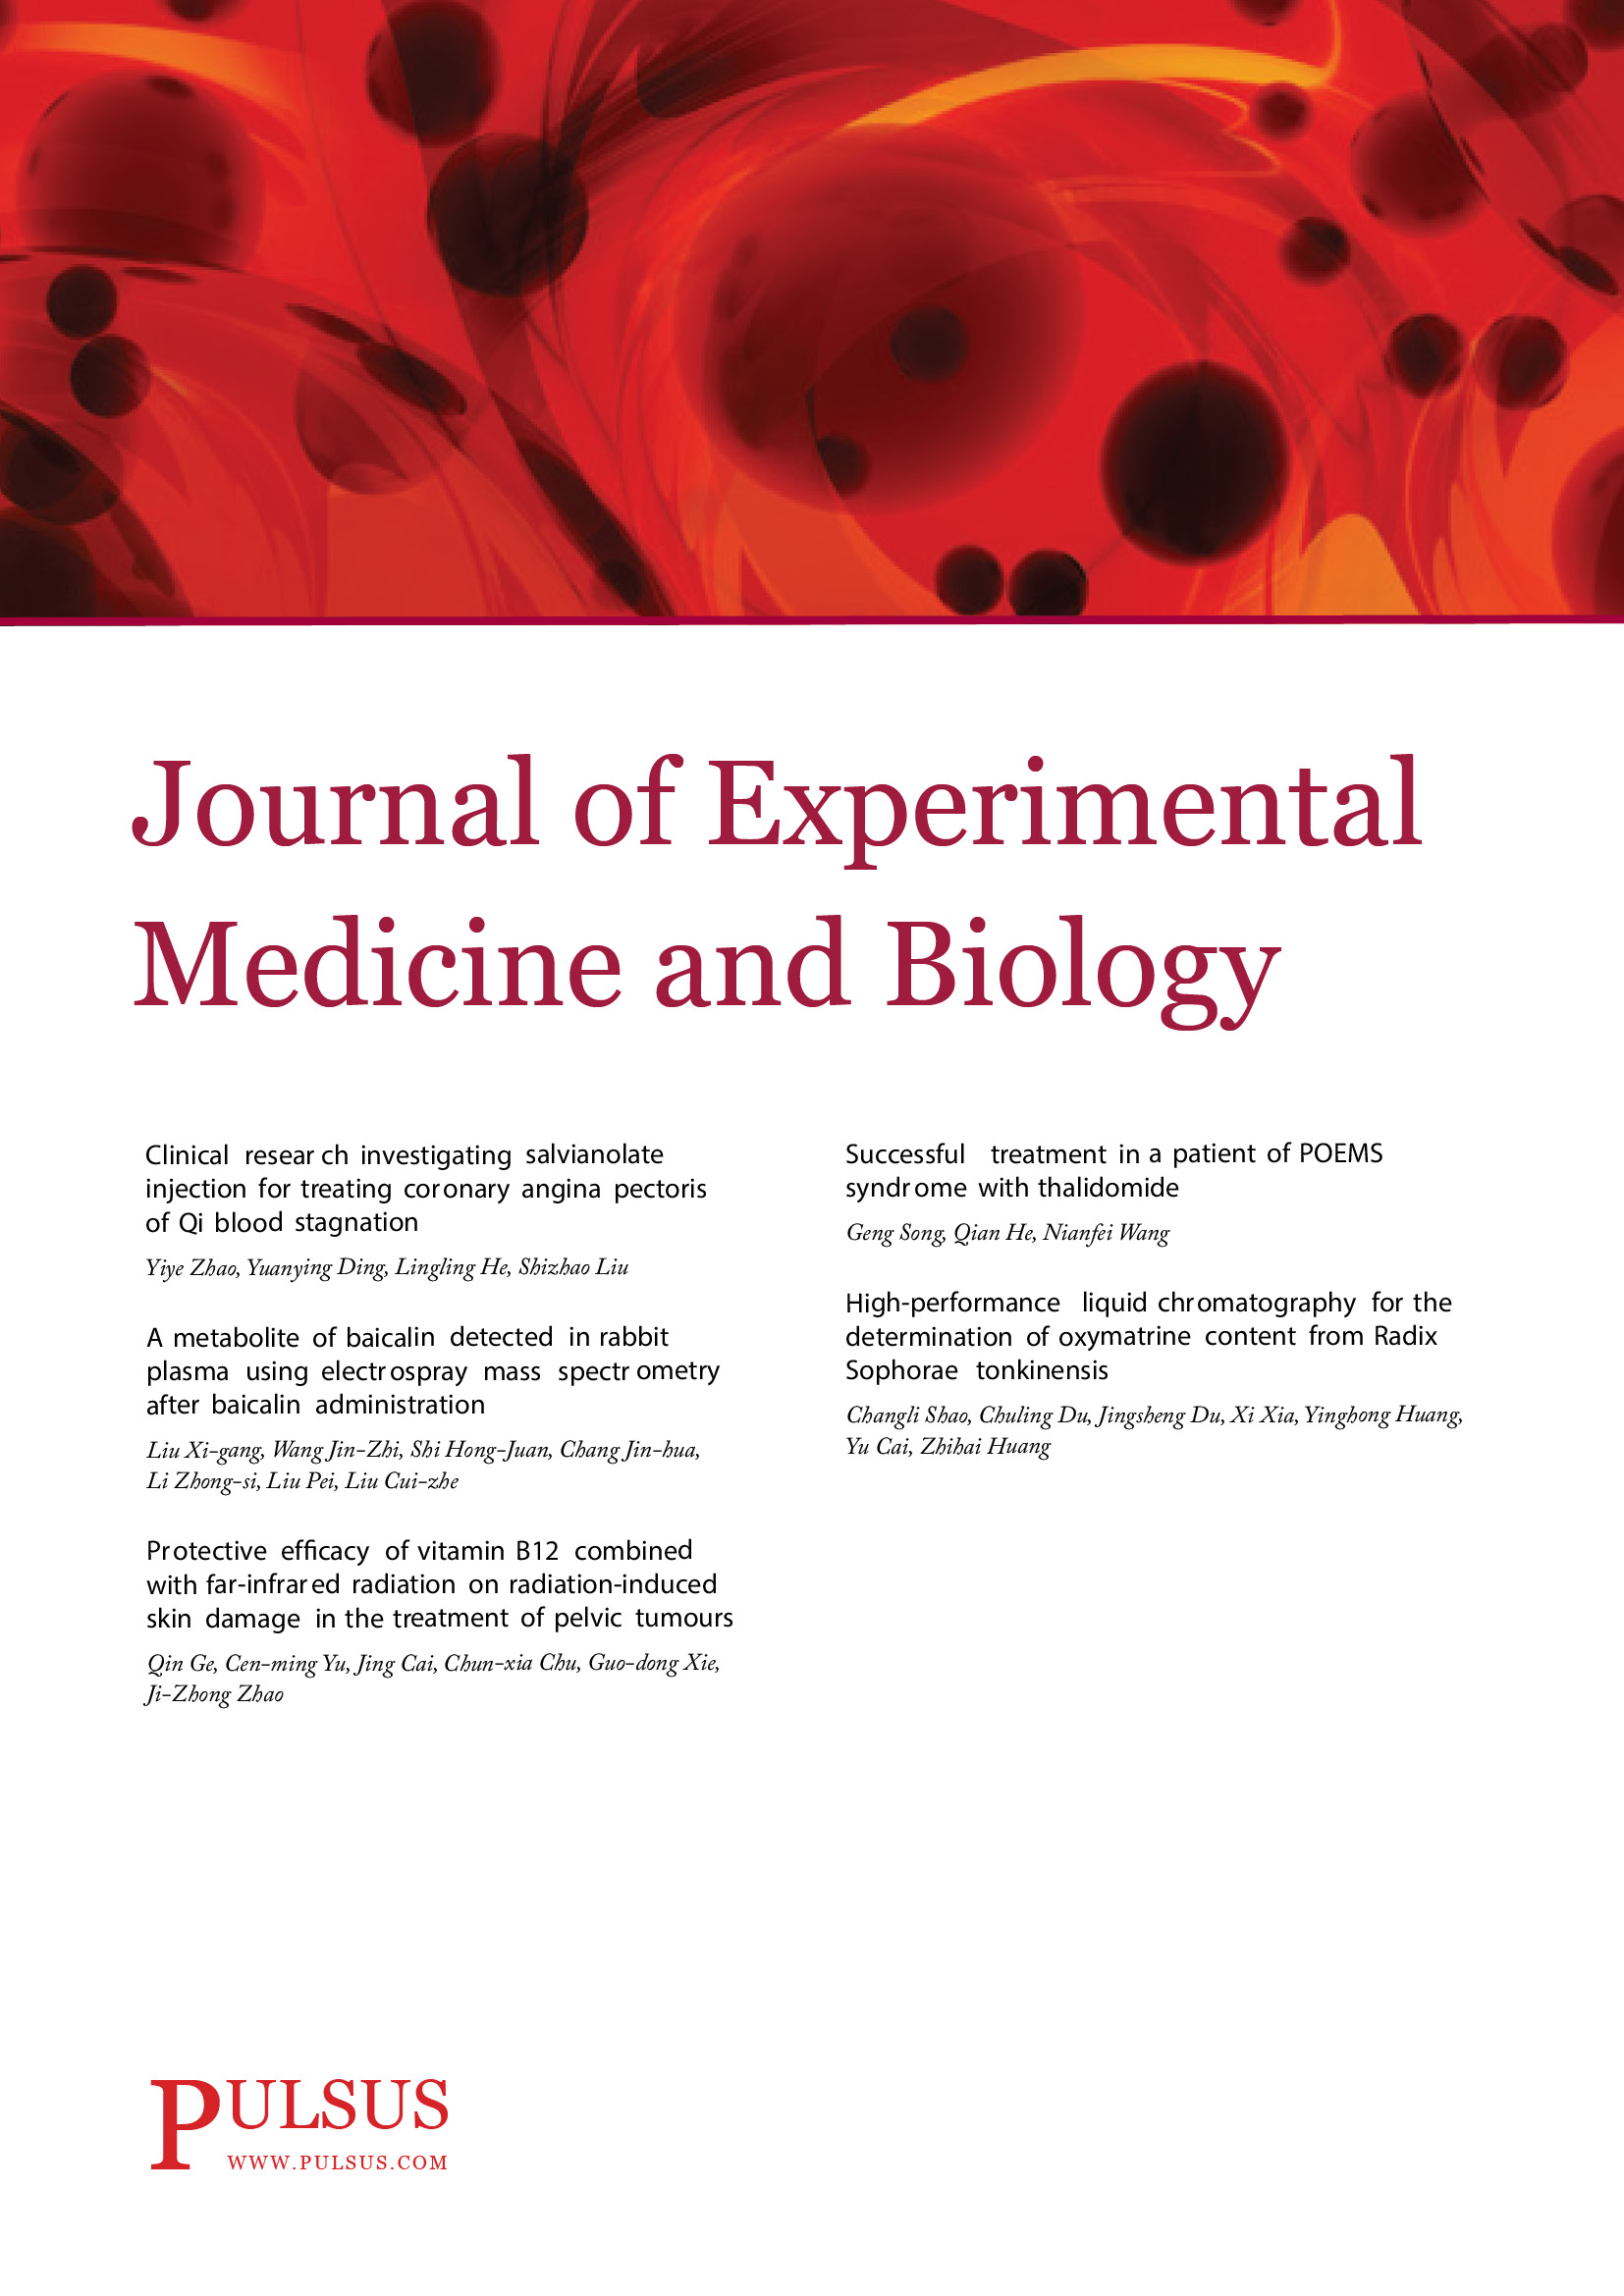 Journal of Experimental Medicine & Biology